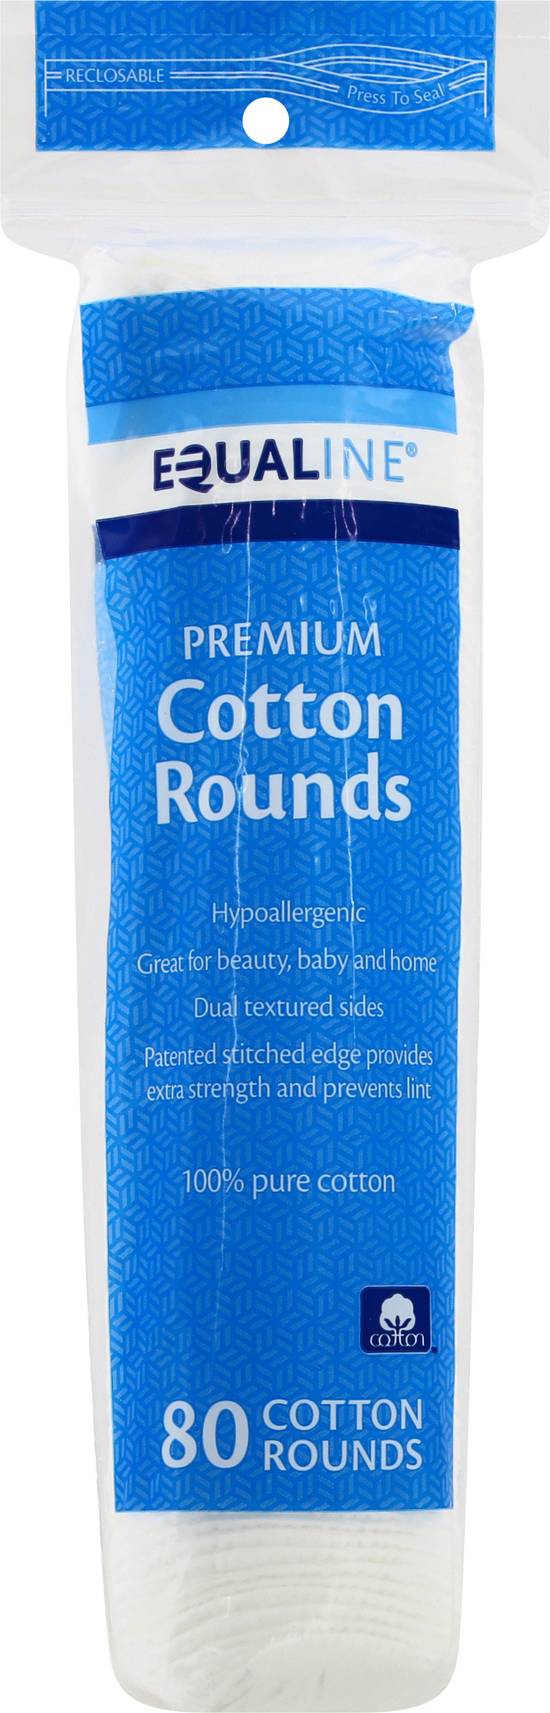 Equaline Premium Cotton Rounds (80 ct)